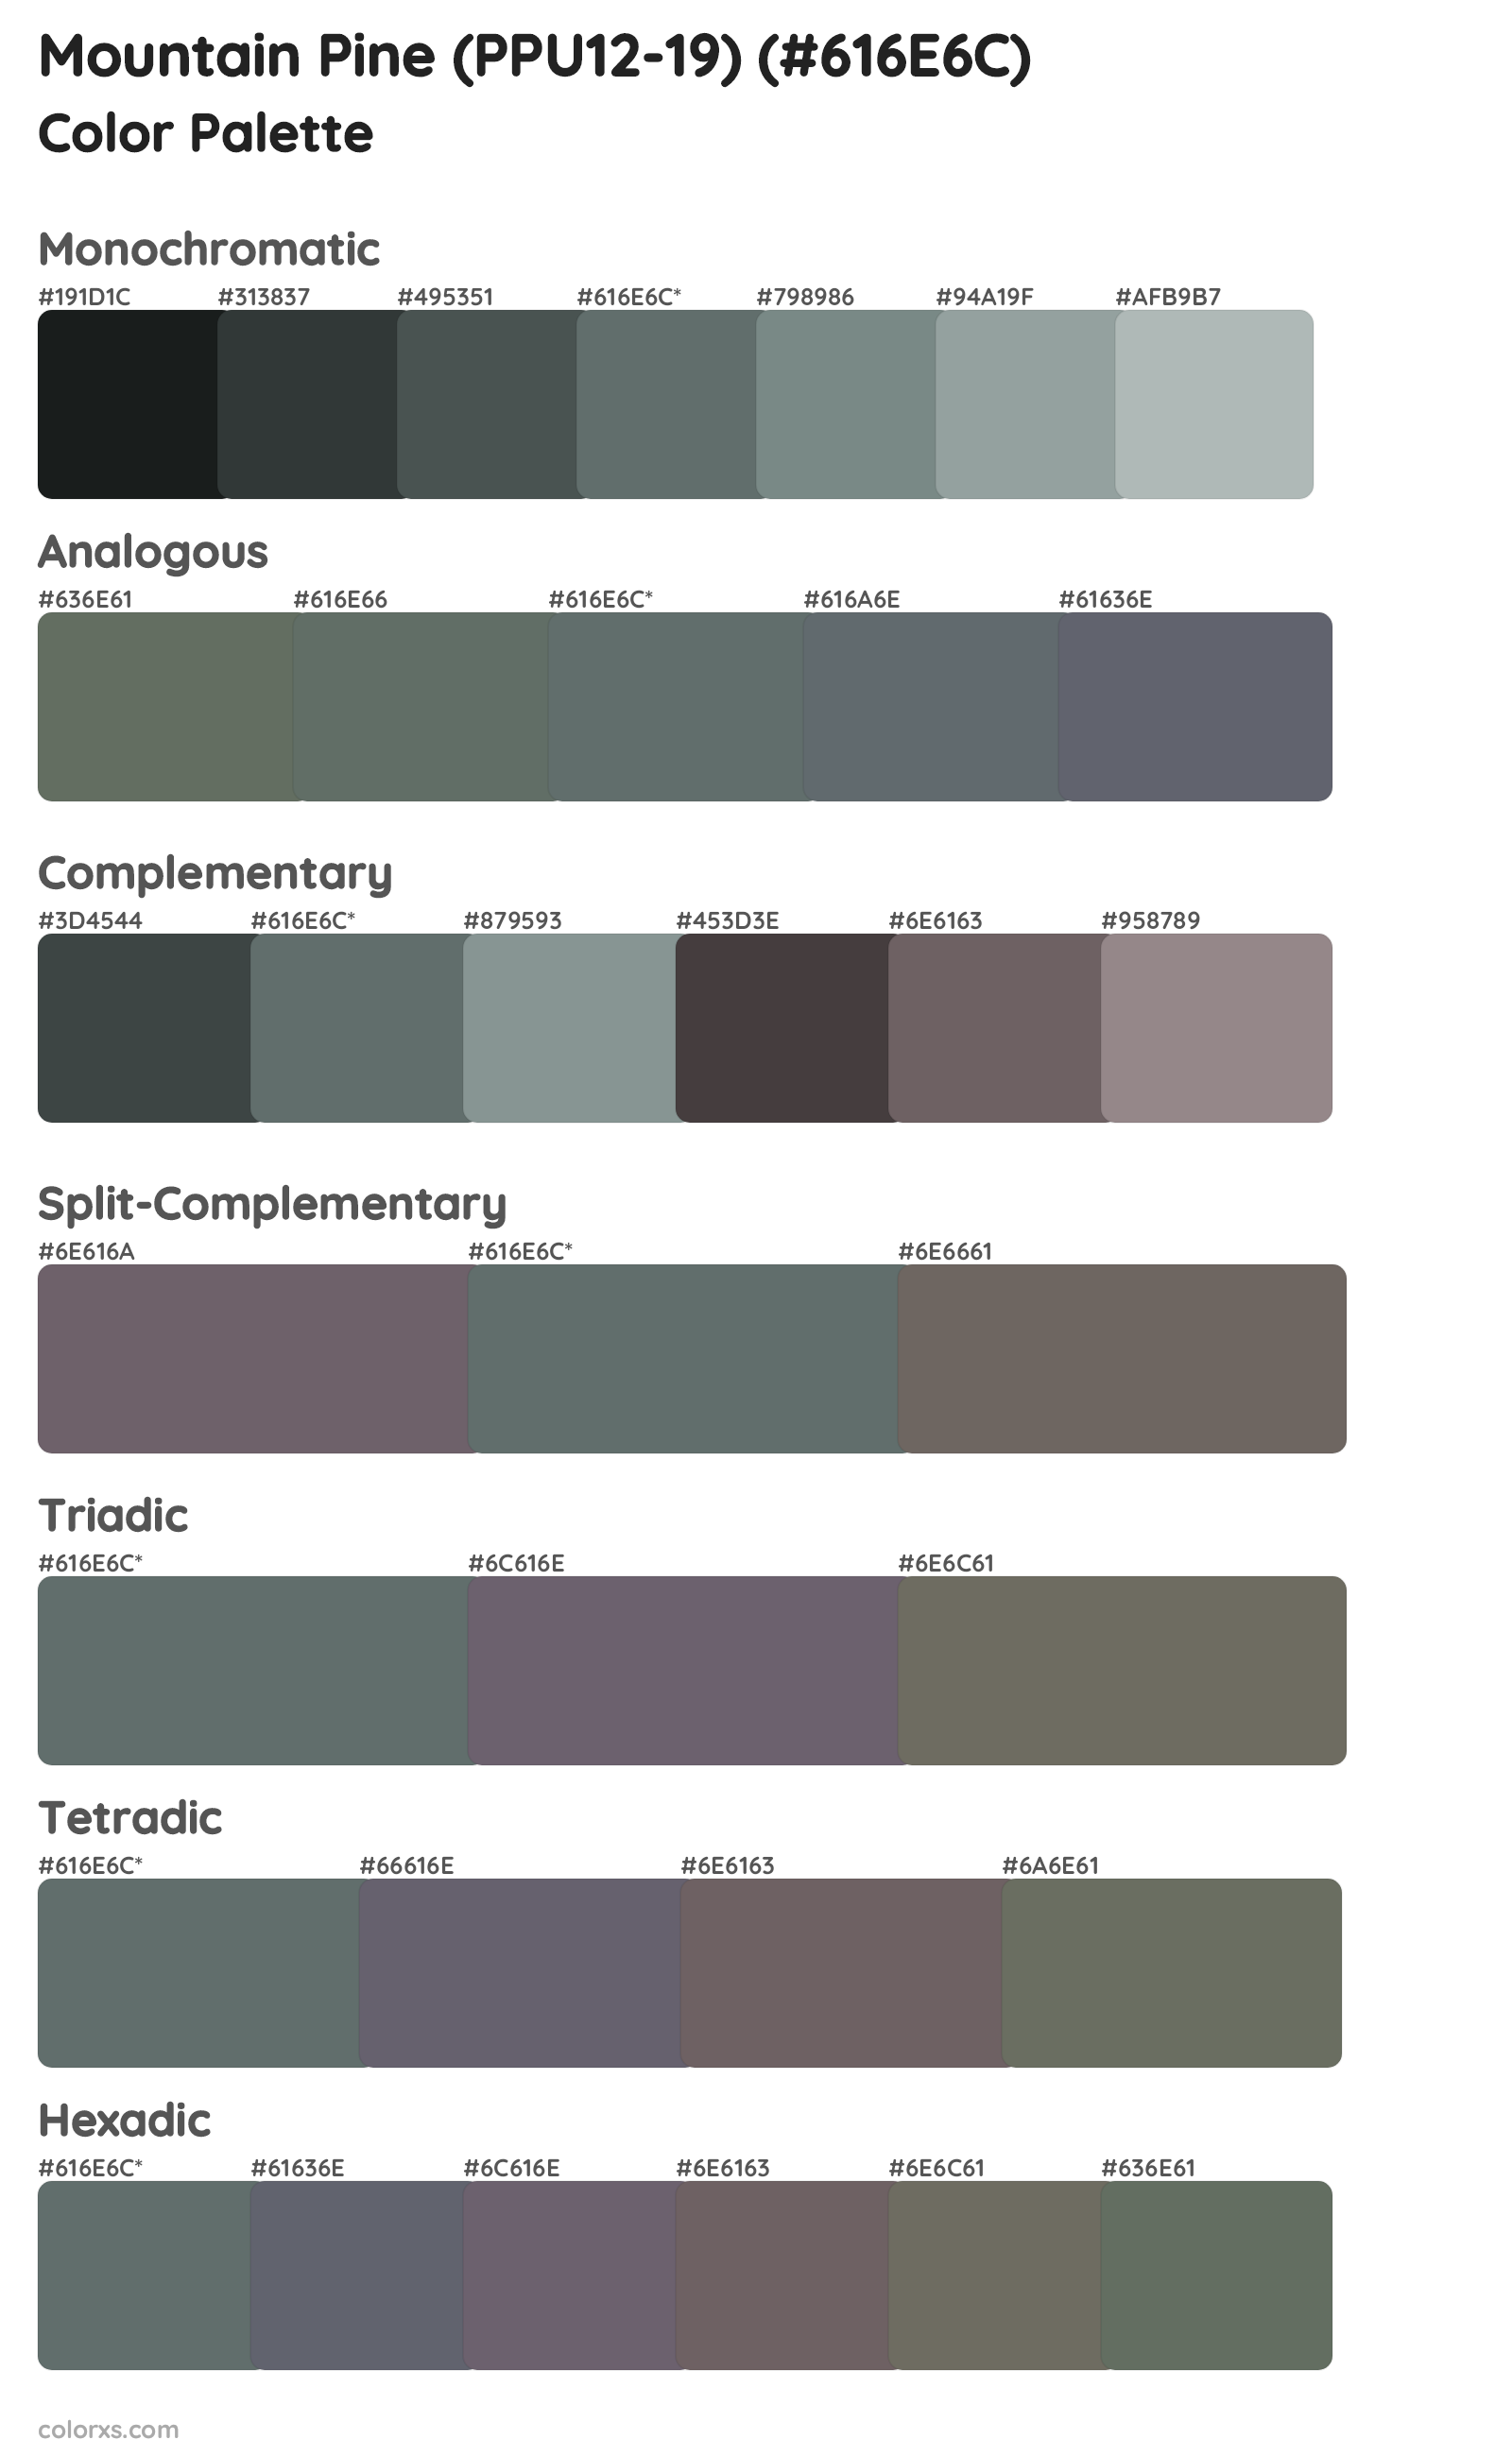 Mountain Pine (PPU12-19) Color Scheme Palettes